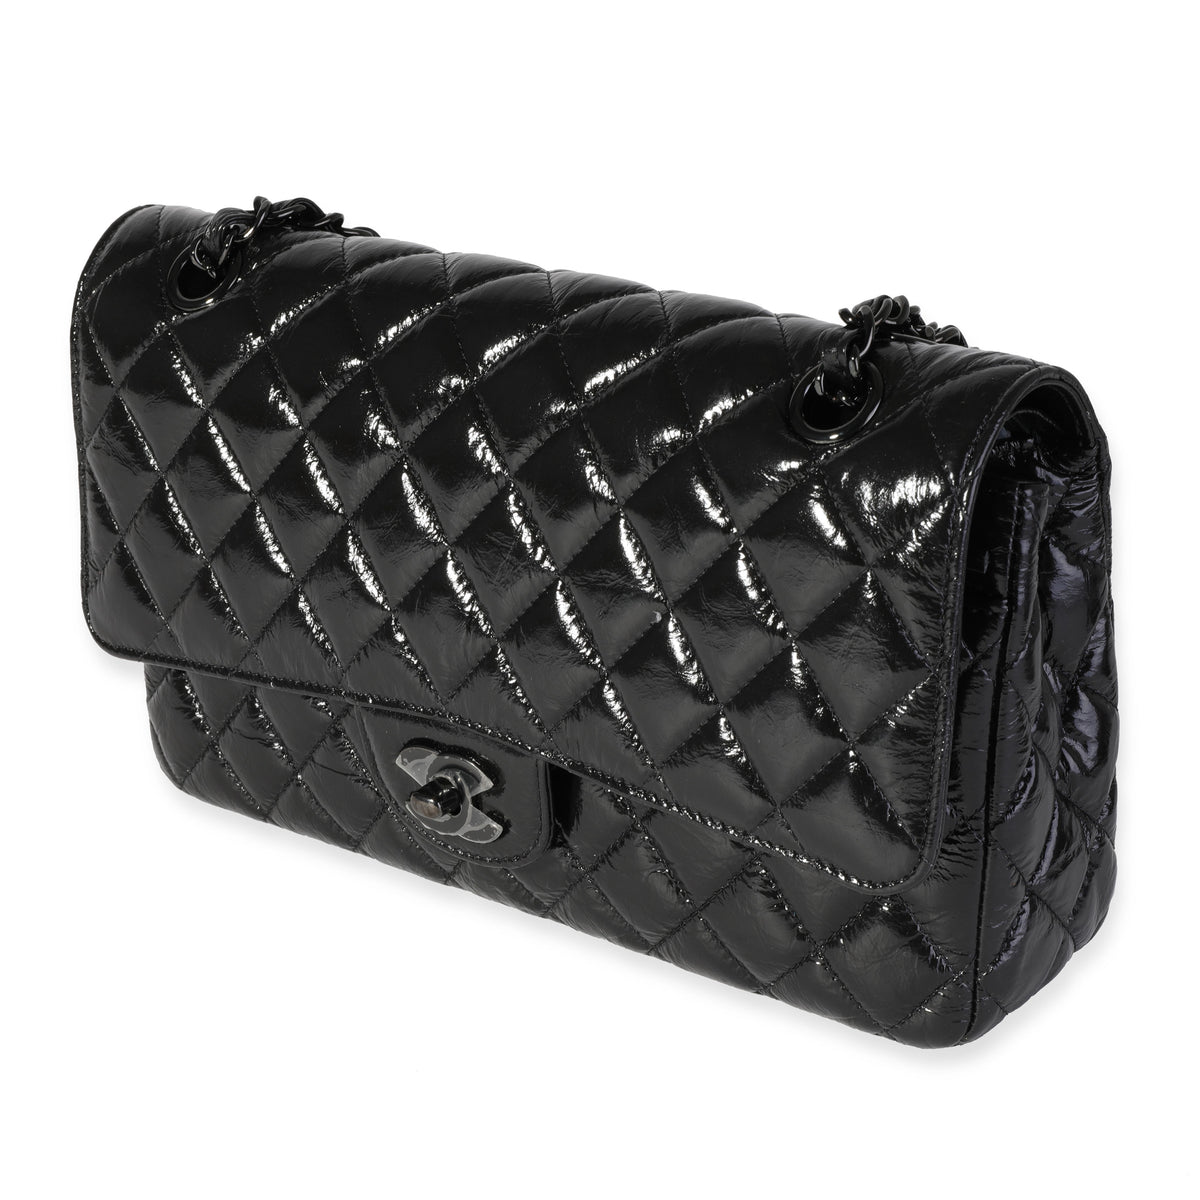 chanel medium handbag black